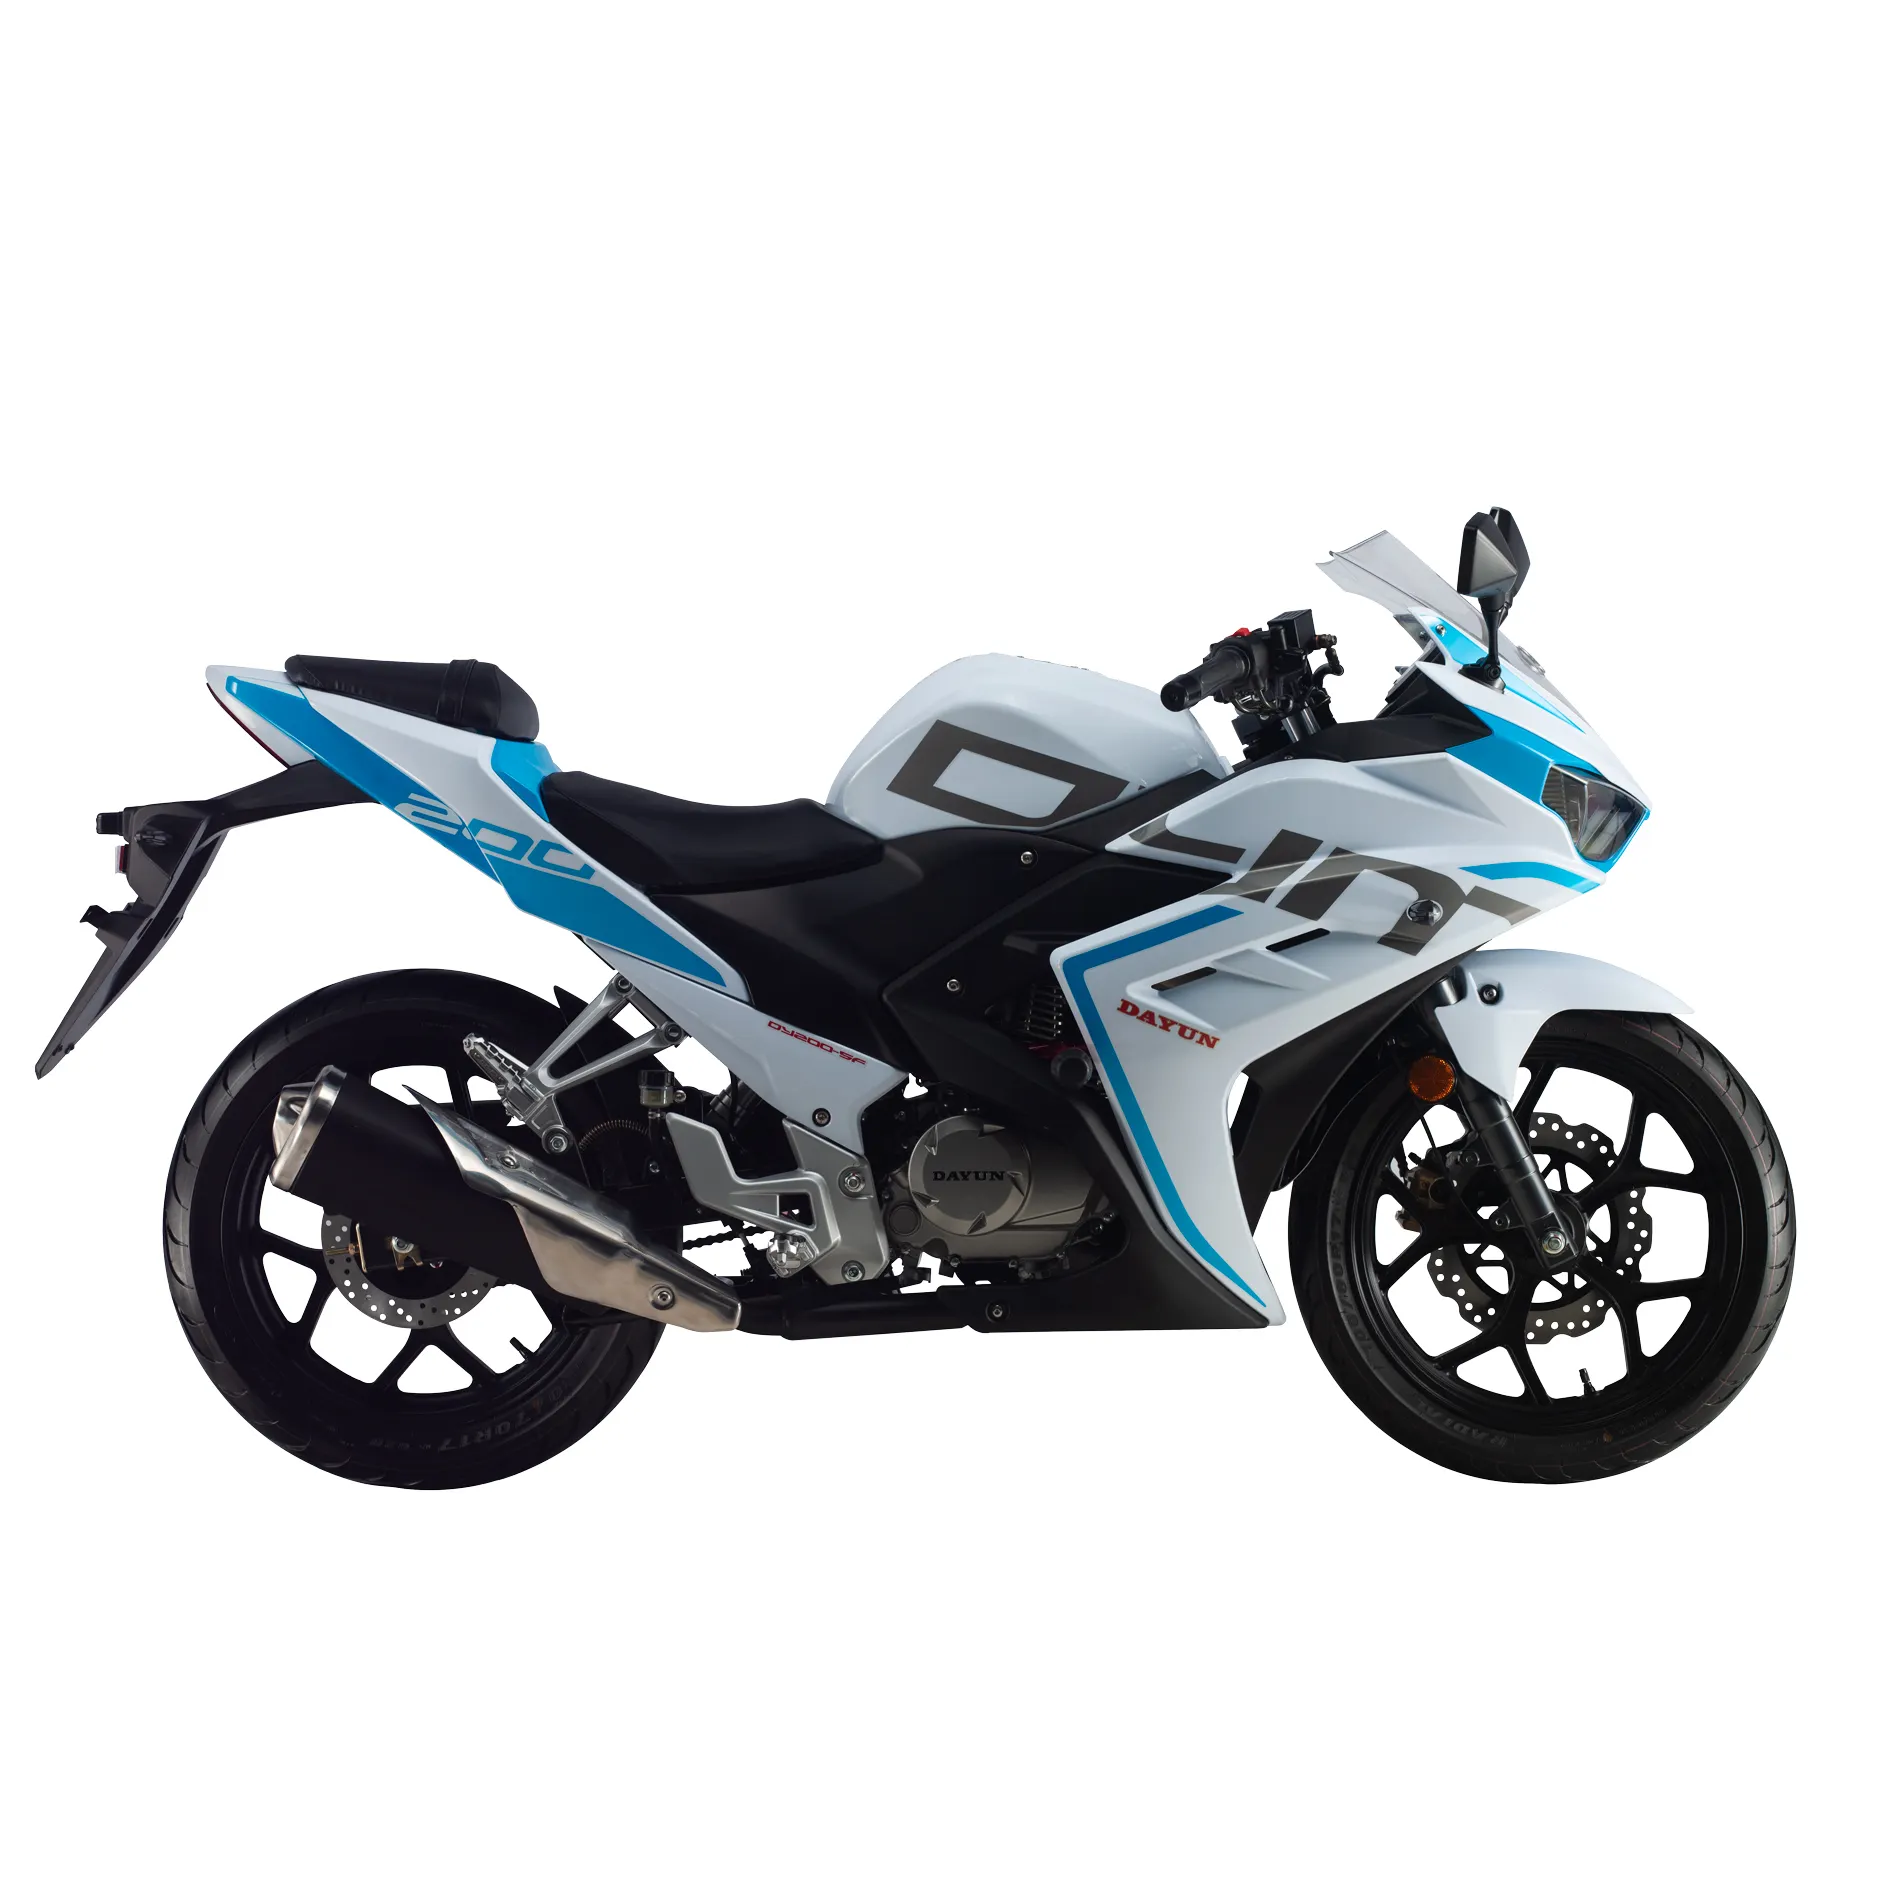 DAYUN Desain Sepeda Motor/Sepeda Motor Balap 200Cc, Desain Modis Performa Tinggi